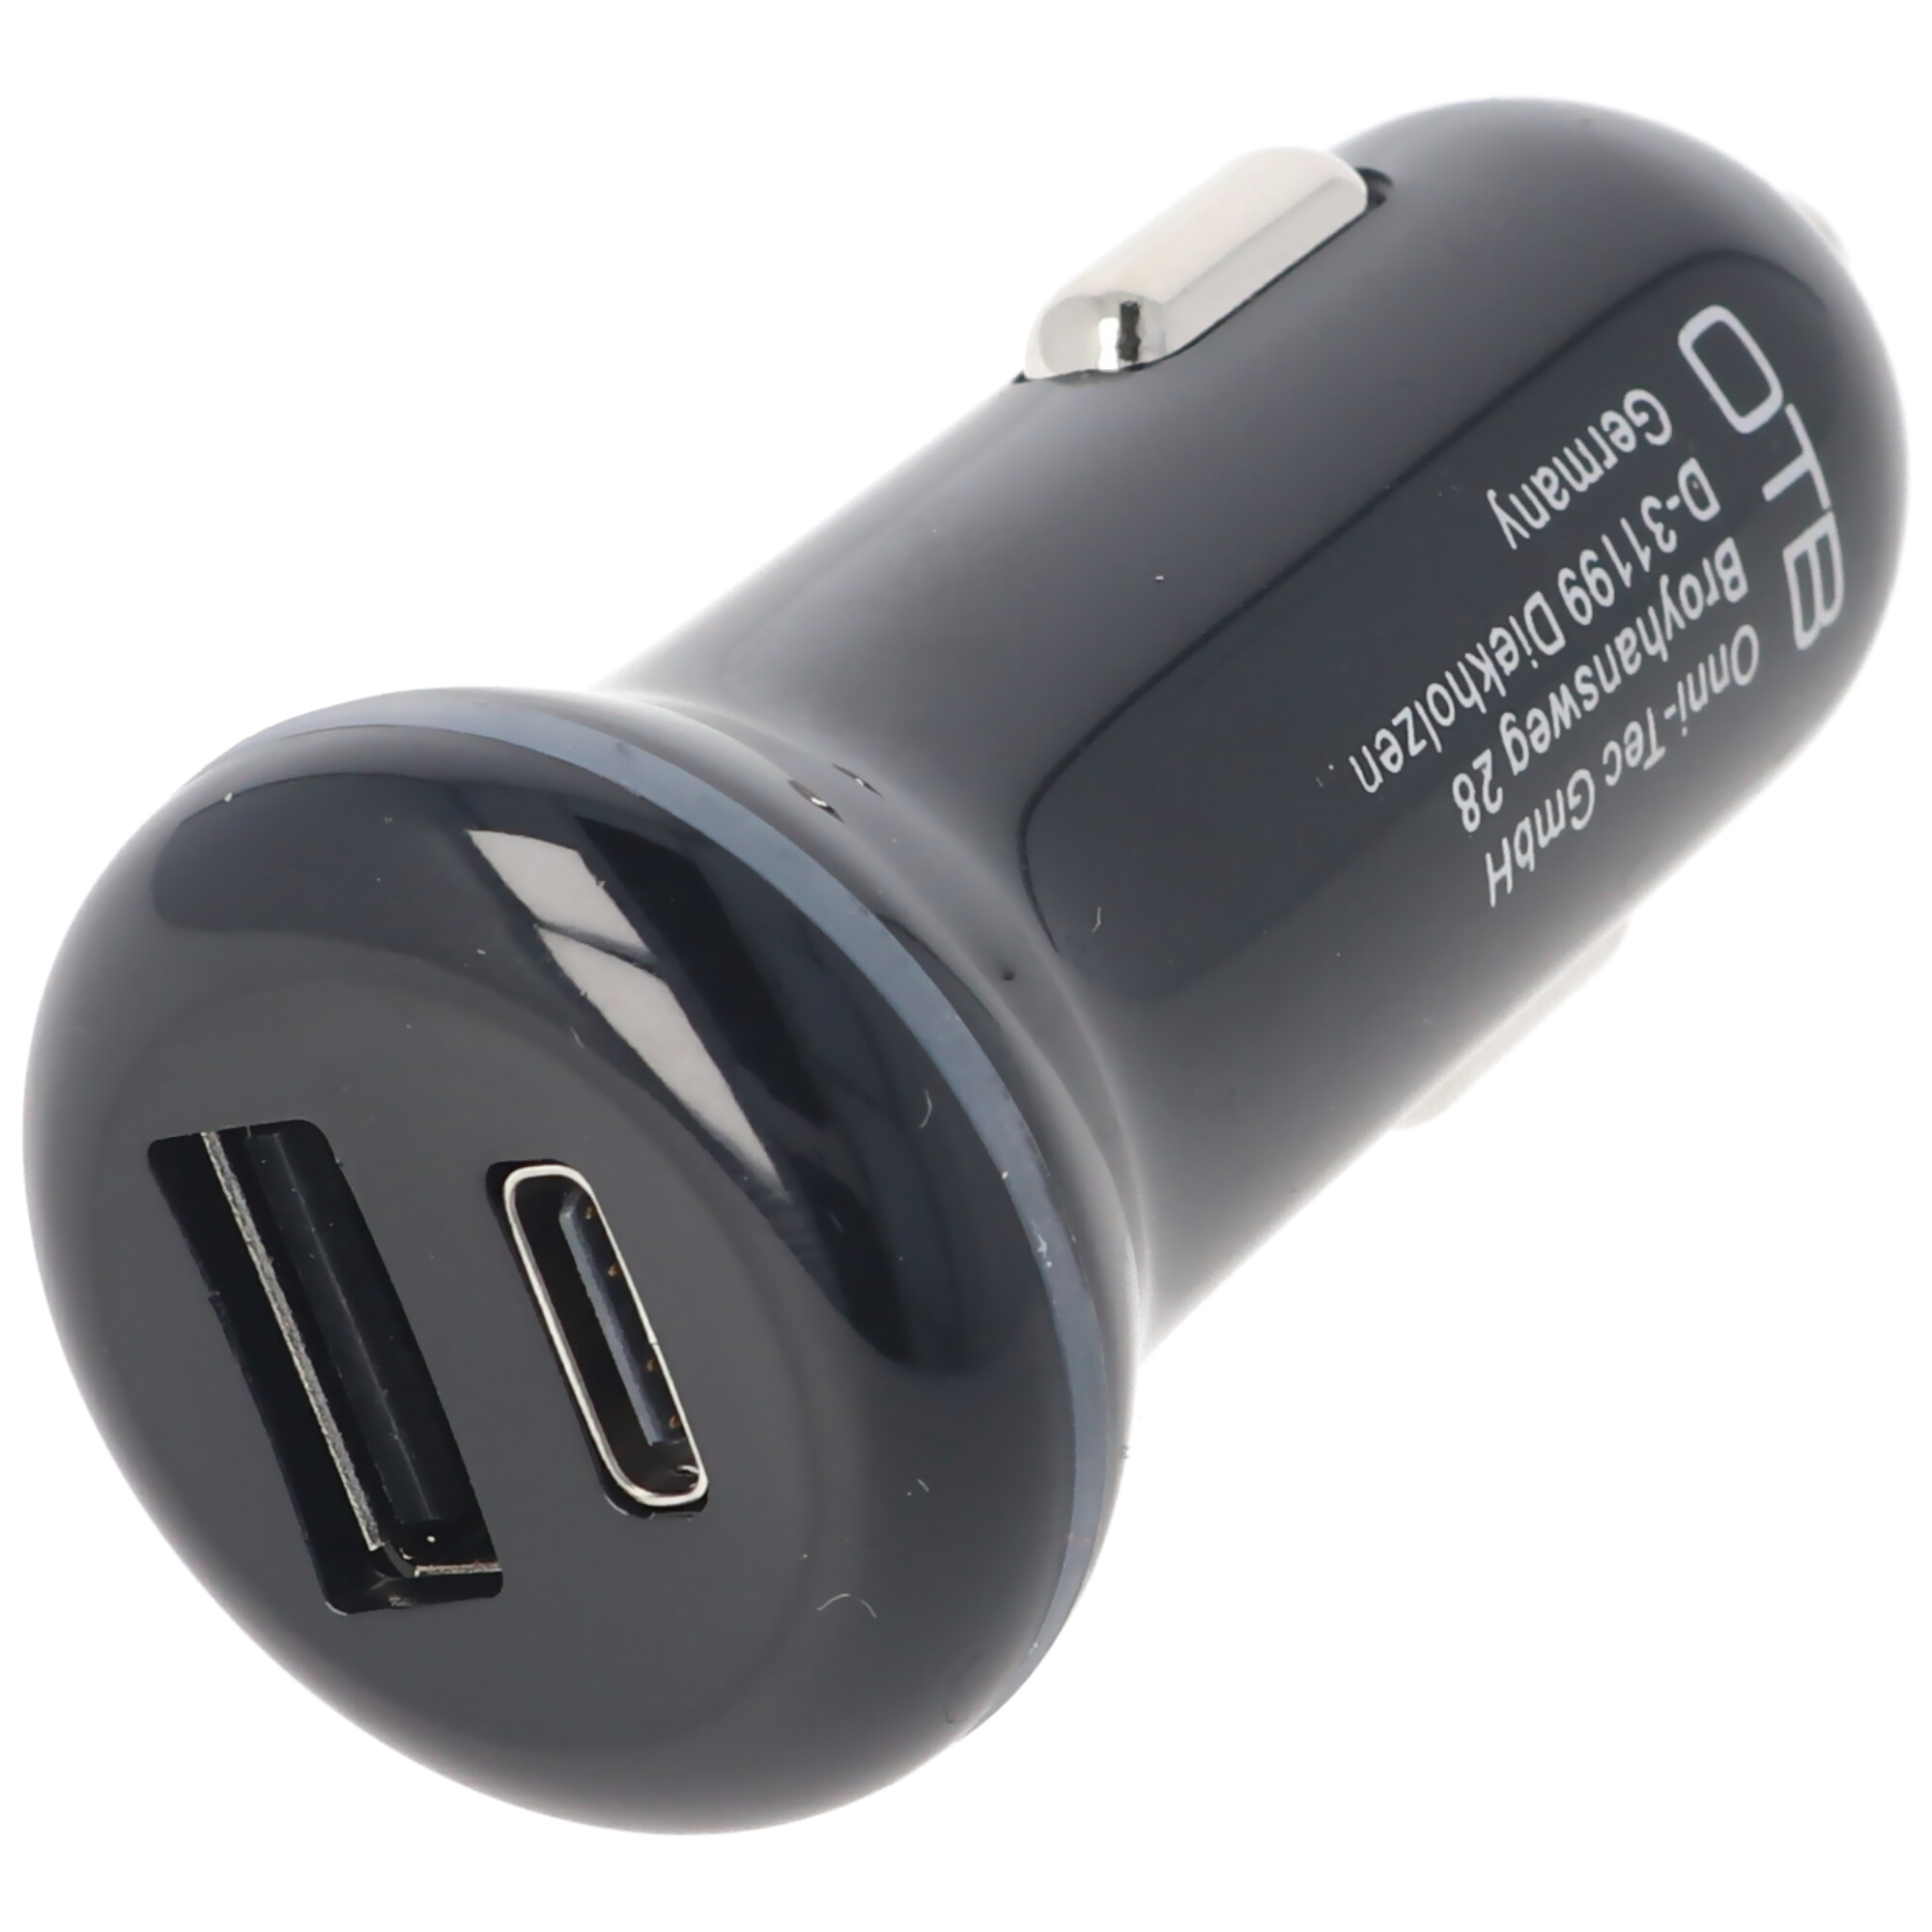 12 Volt KFZ Ladeadapter mit USB-C und USB-A Anschluss, Ladestrom max. 3A, für USB-C, Ladegeräte